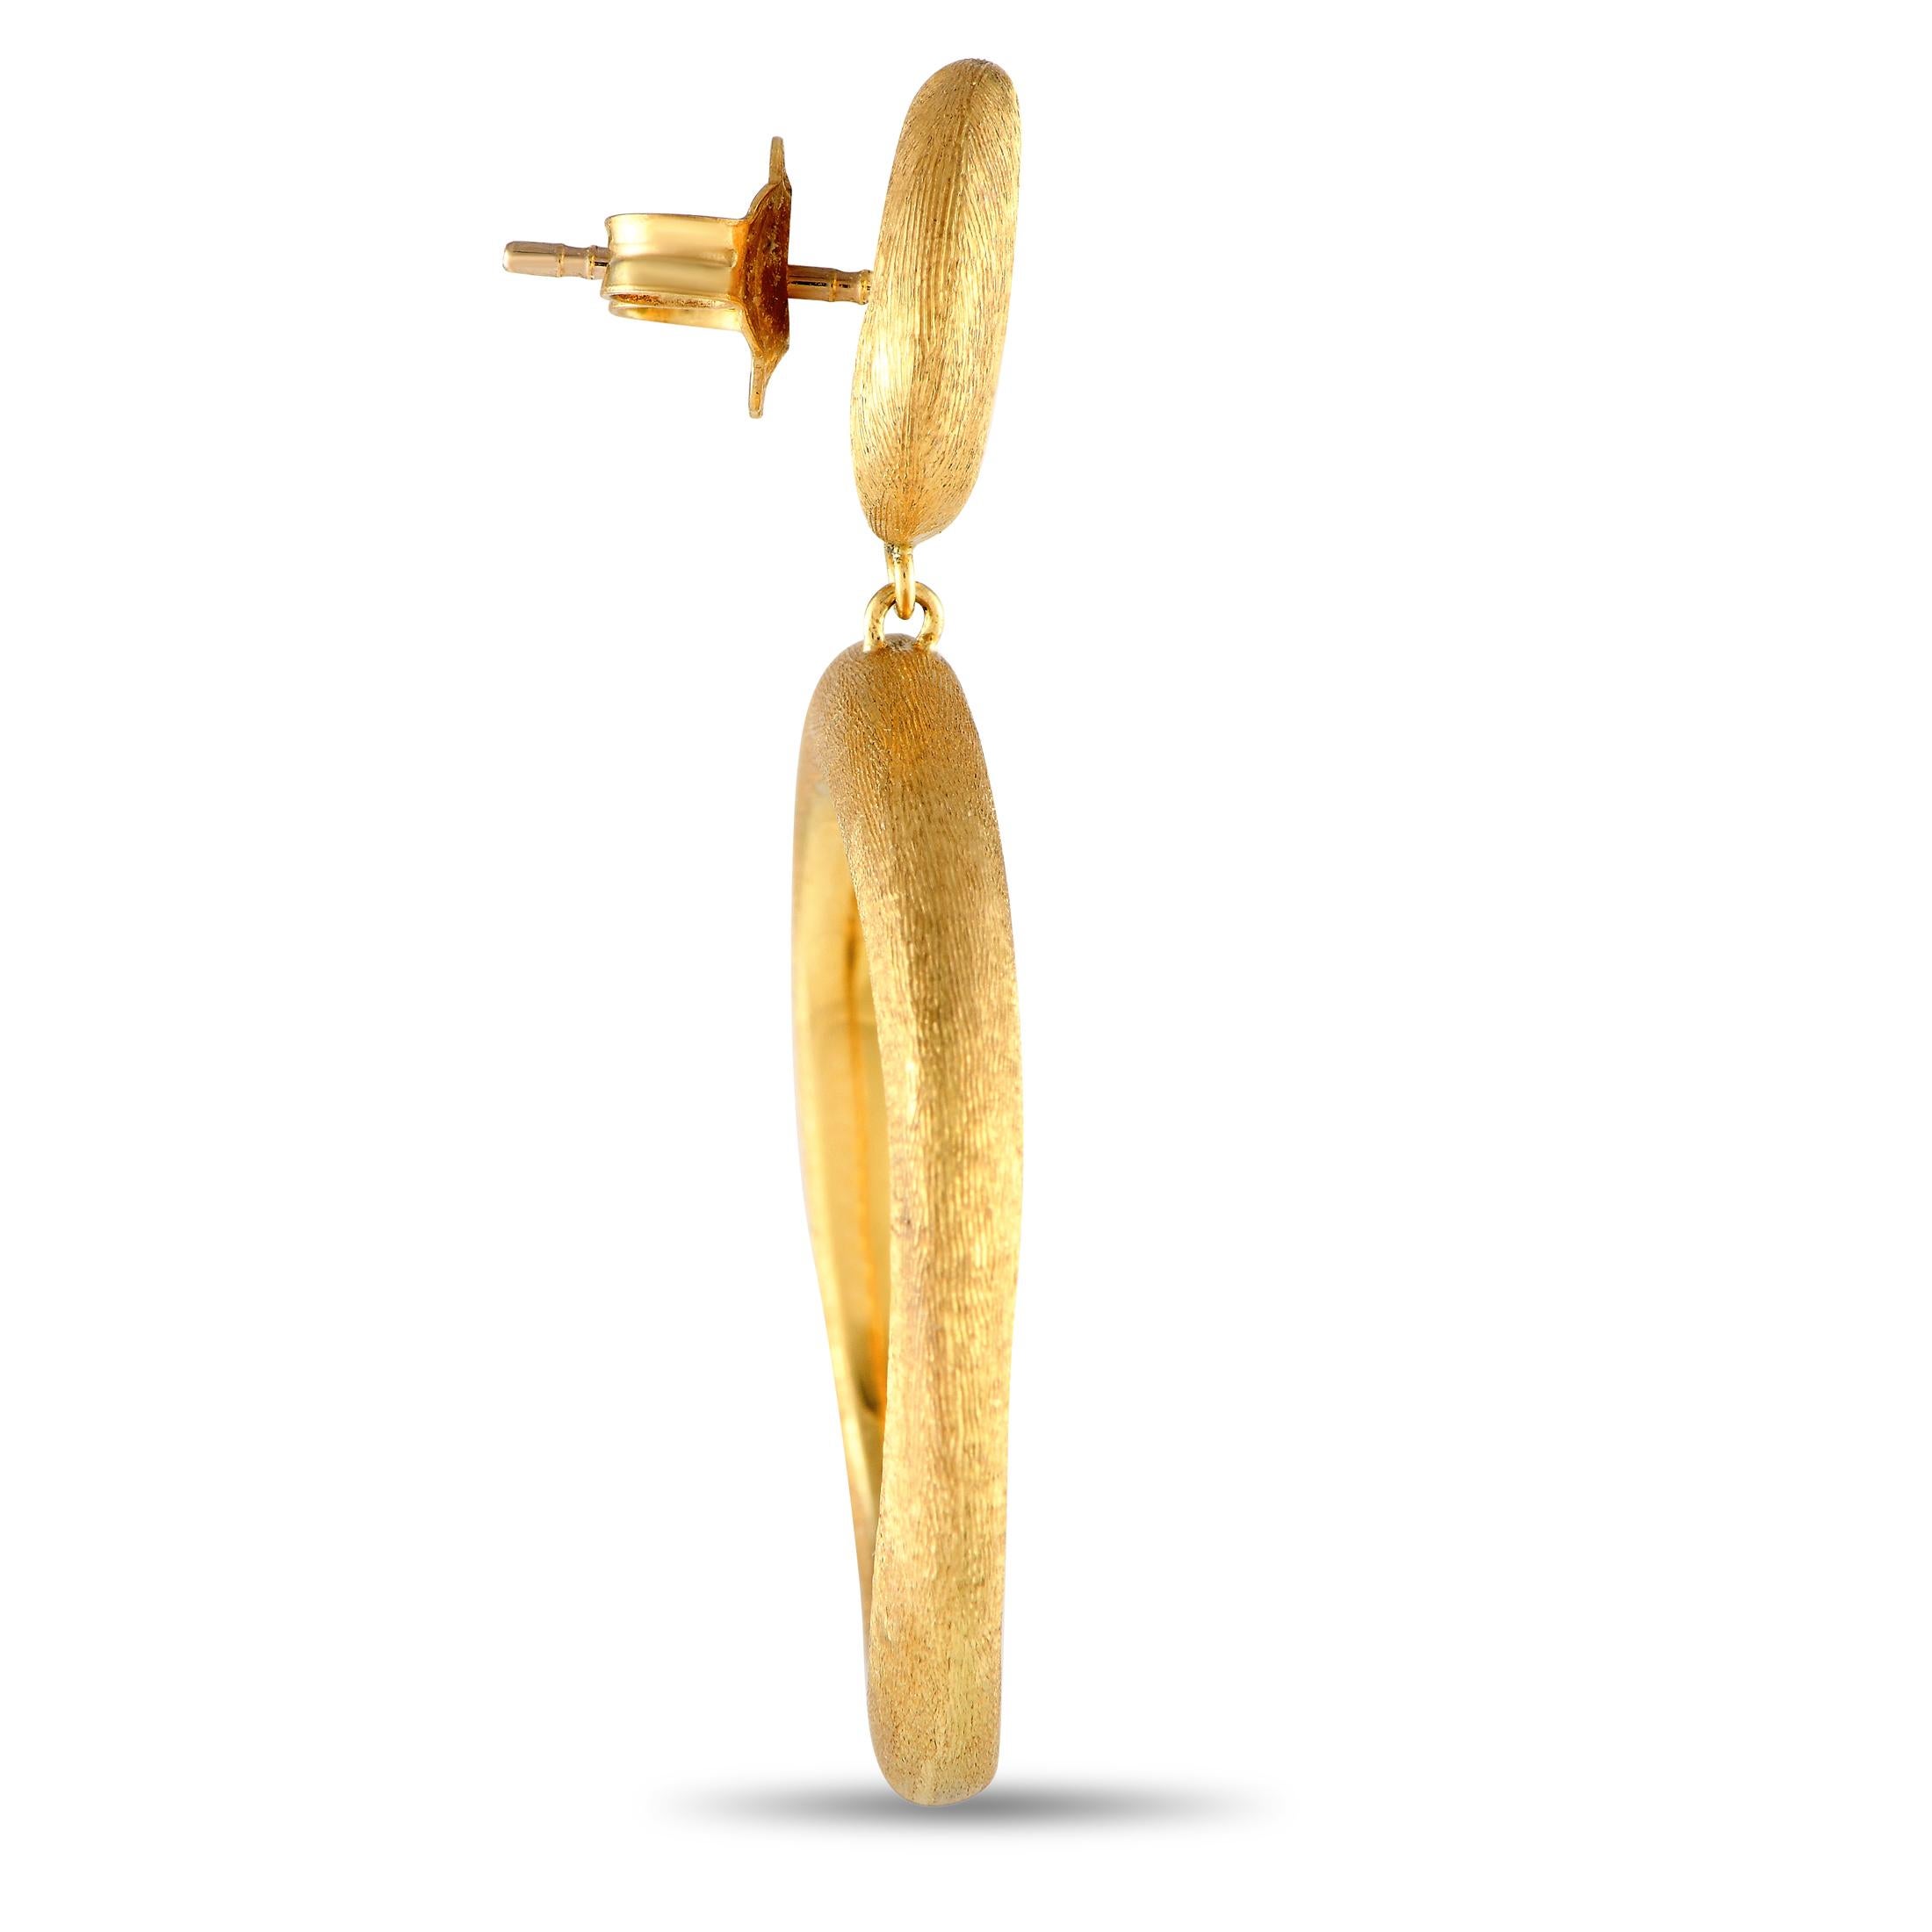 Gravé à la main pour une finition brossée semblable à de la soie, l'or jaune 18 carats texturé ajoute une dimension impressionnante au design minimaliste de ces boucles d'oreilles Jaipur de Marco Bicego. Chaque pièce mesure 1,5 de long par 1,0 de